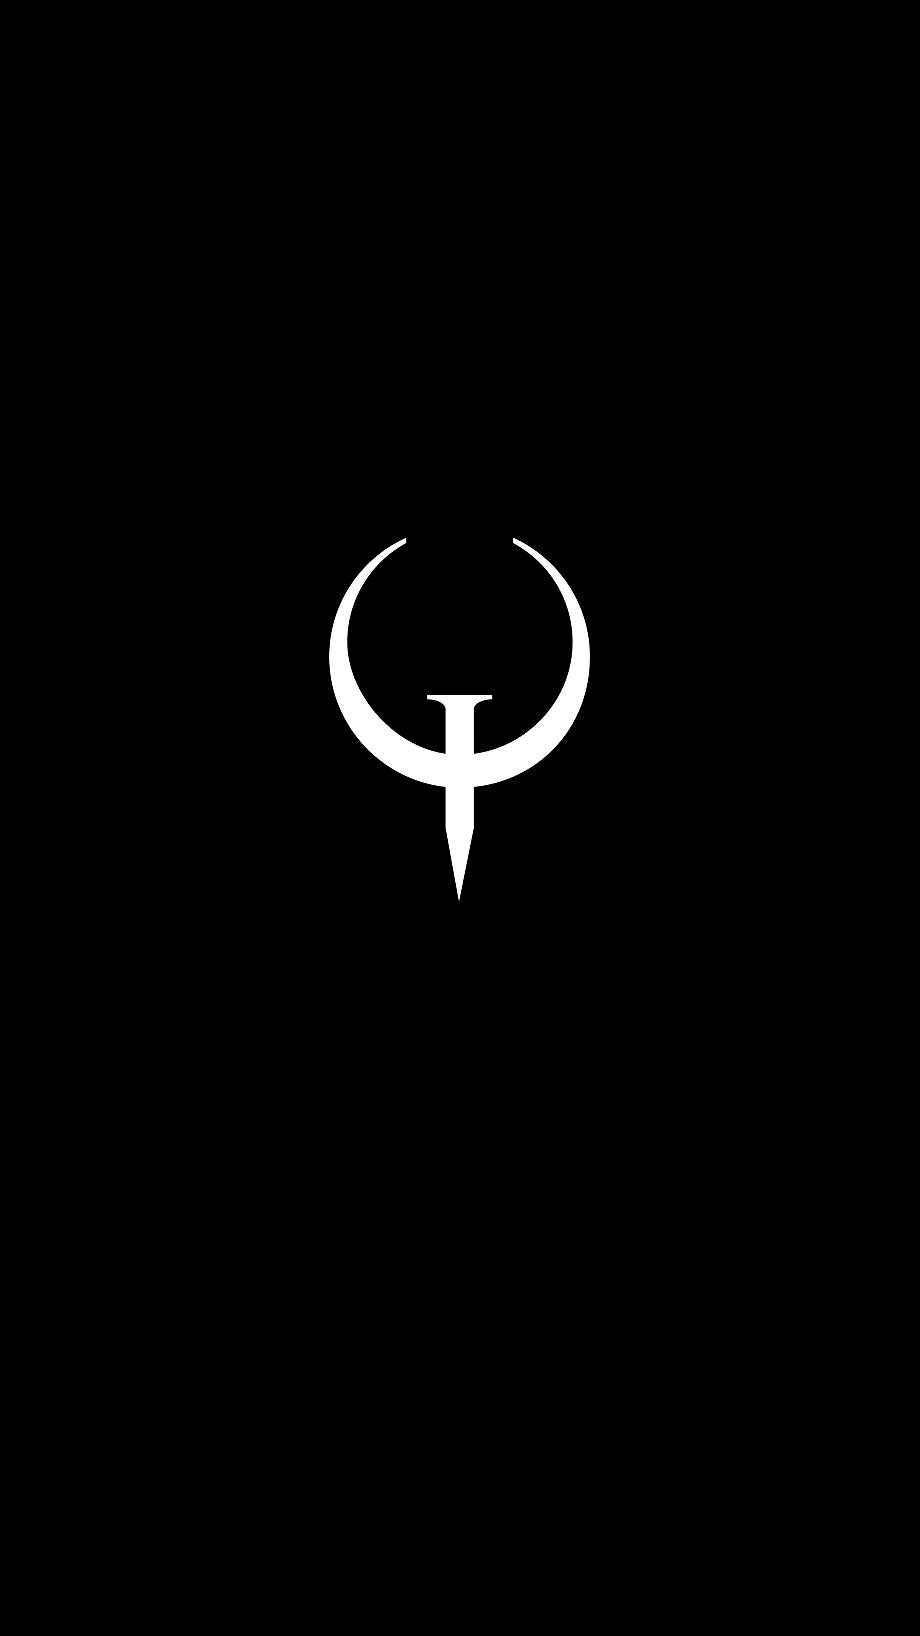 quake logo symbol